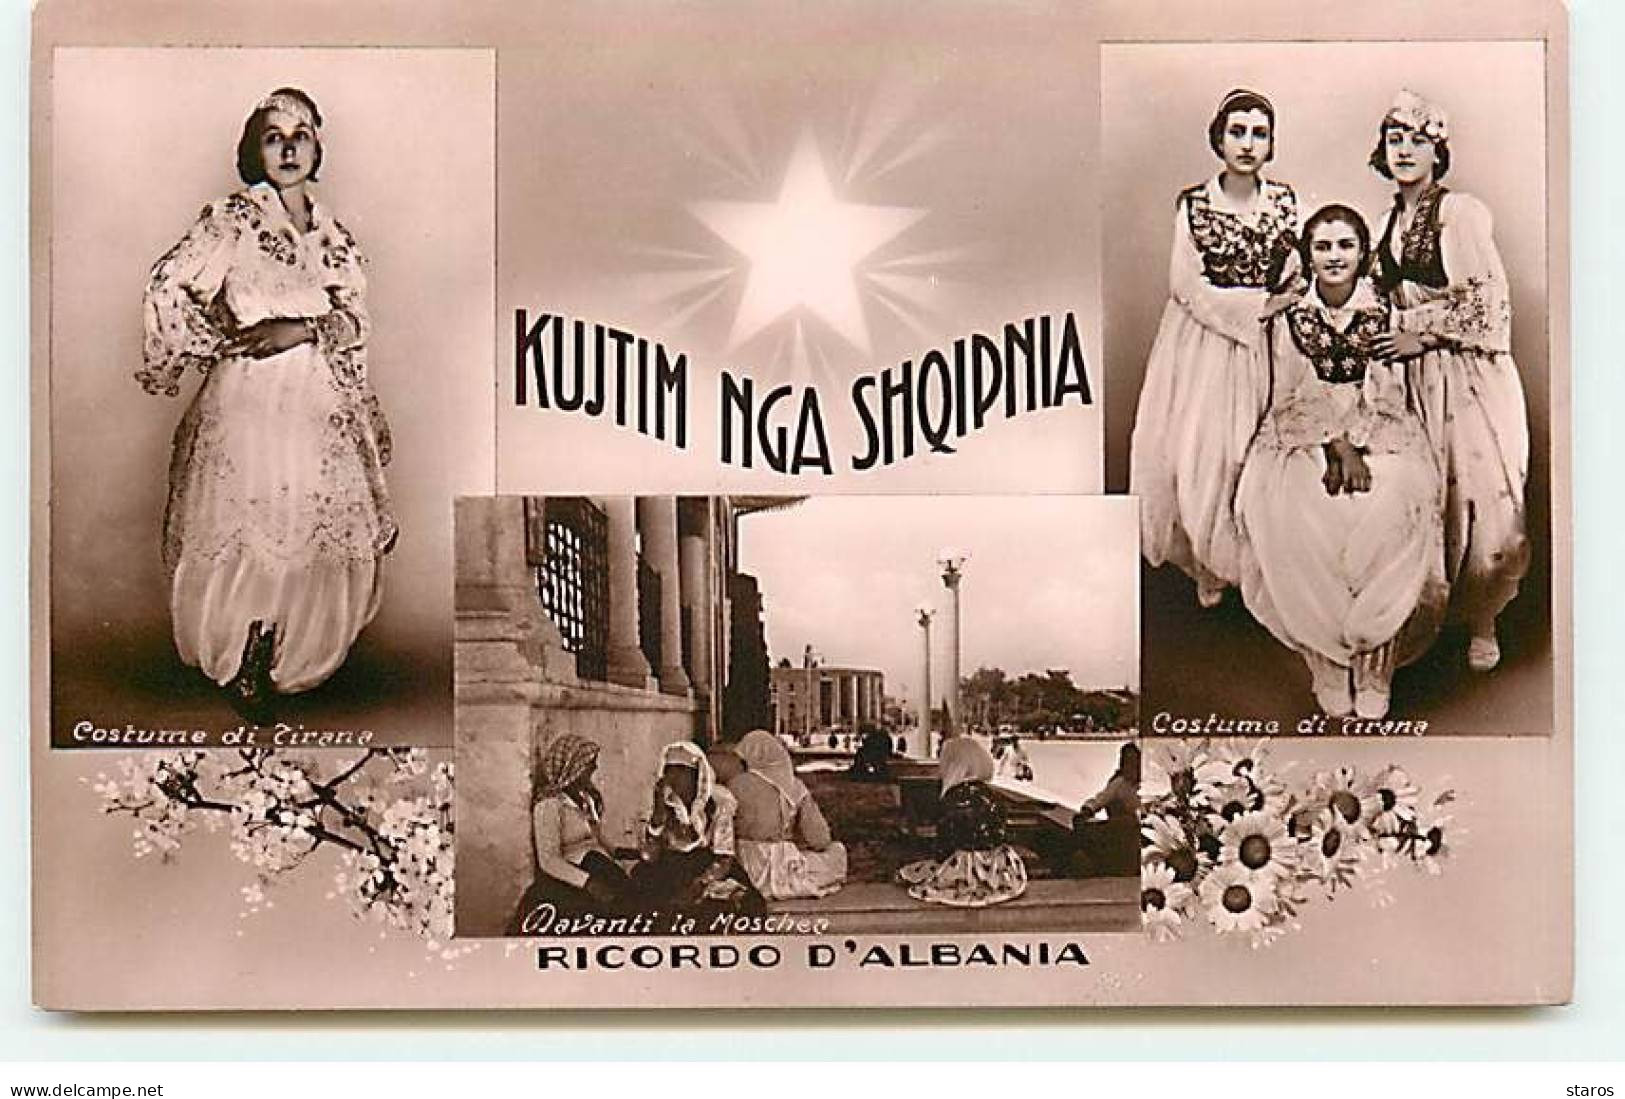 Albanie - Ricordo D'Albania - Kujtim Nga Shqipnia - Costume Di Tirana - Albanie